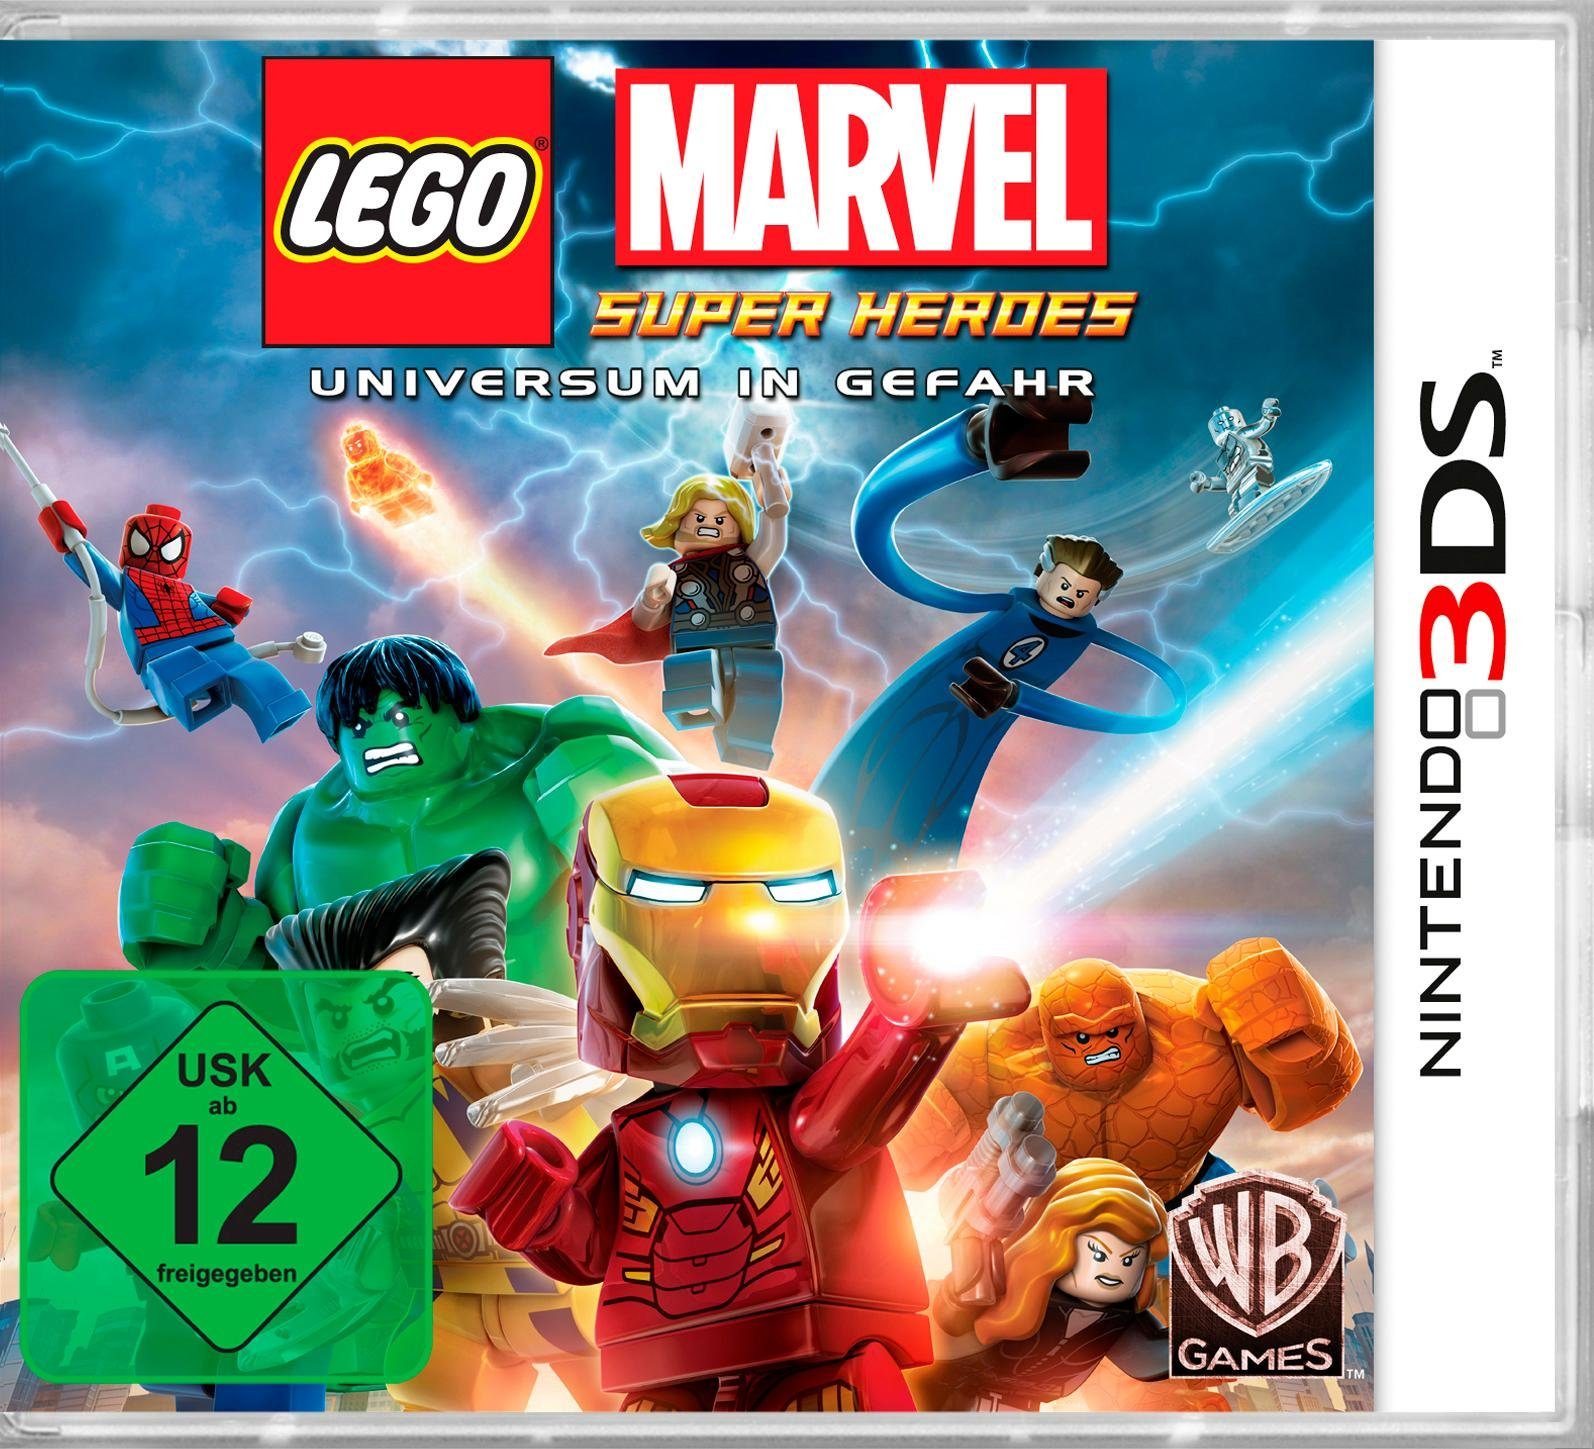 Heroes Marvel Software Pyramide Games Warner Nintendo Lego 3DS, Super